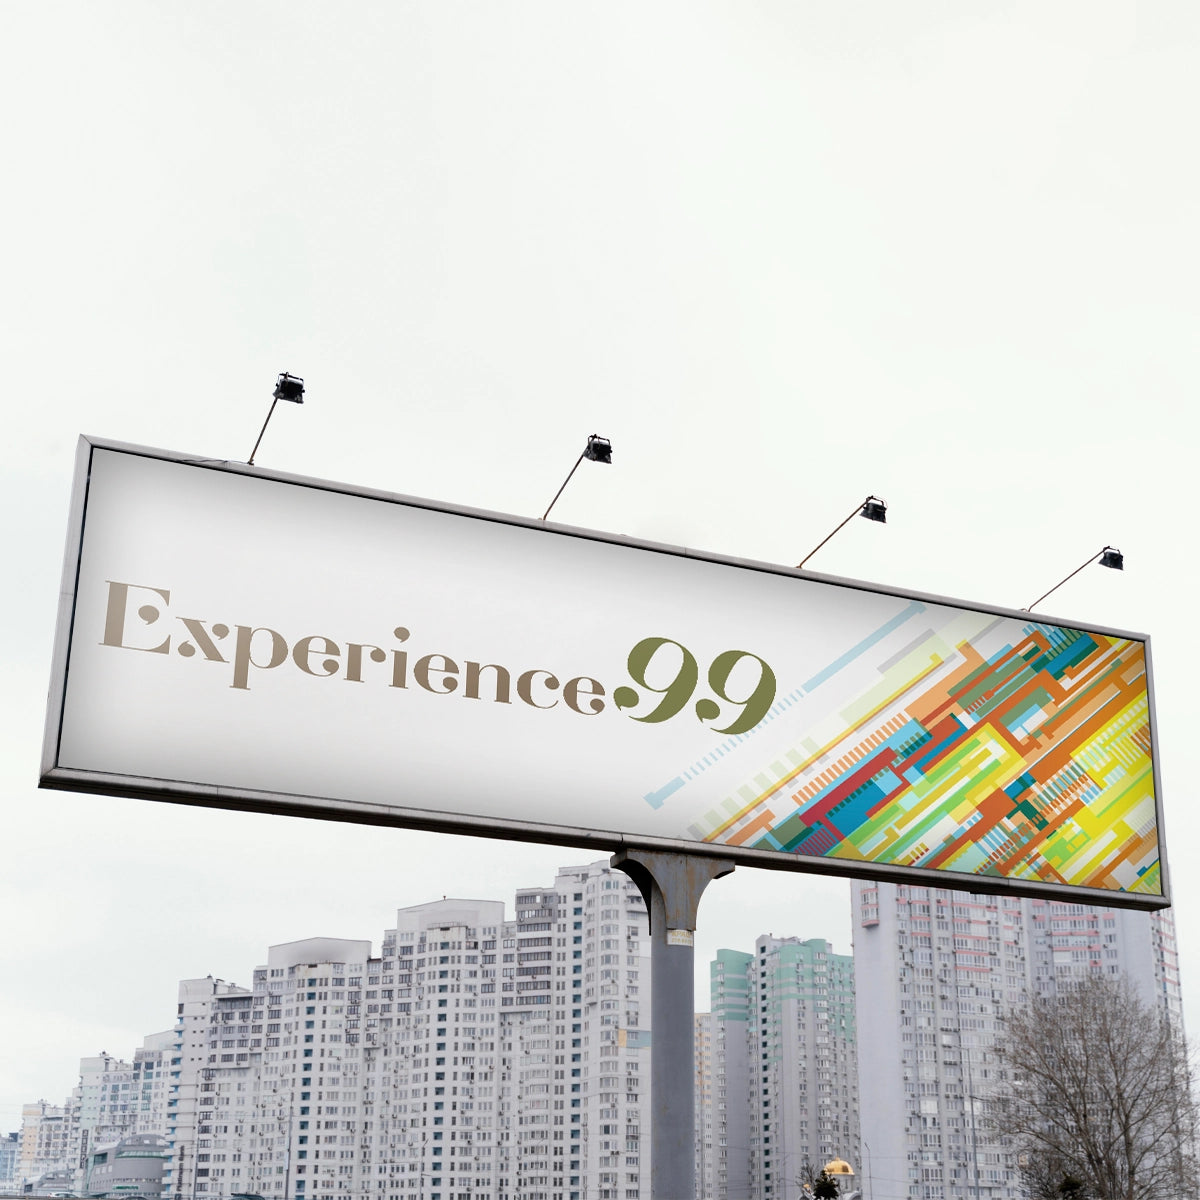 experience99.com